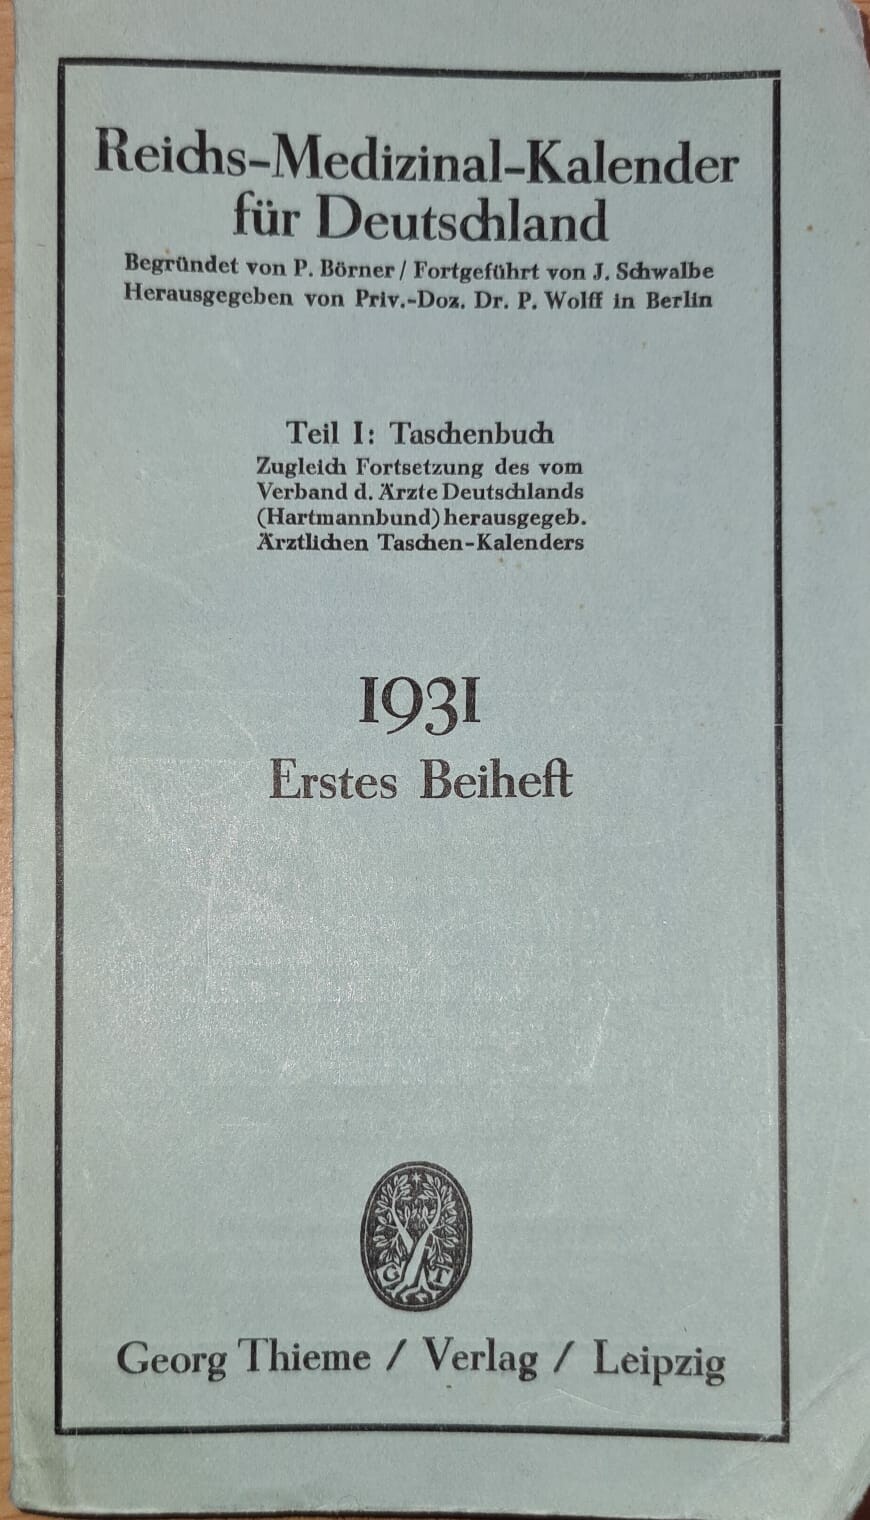 Reichs-Medizinal-Kalender für Deutschland 1931, Erstes Beiheft (Krankenhausmuseum Bielefeld e.V. CC BY-NC-SA)